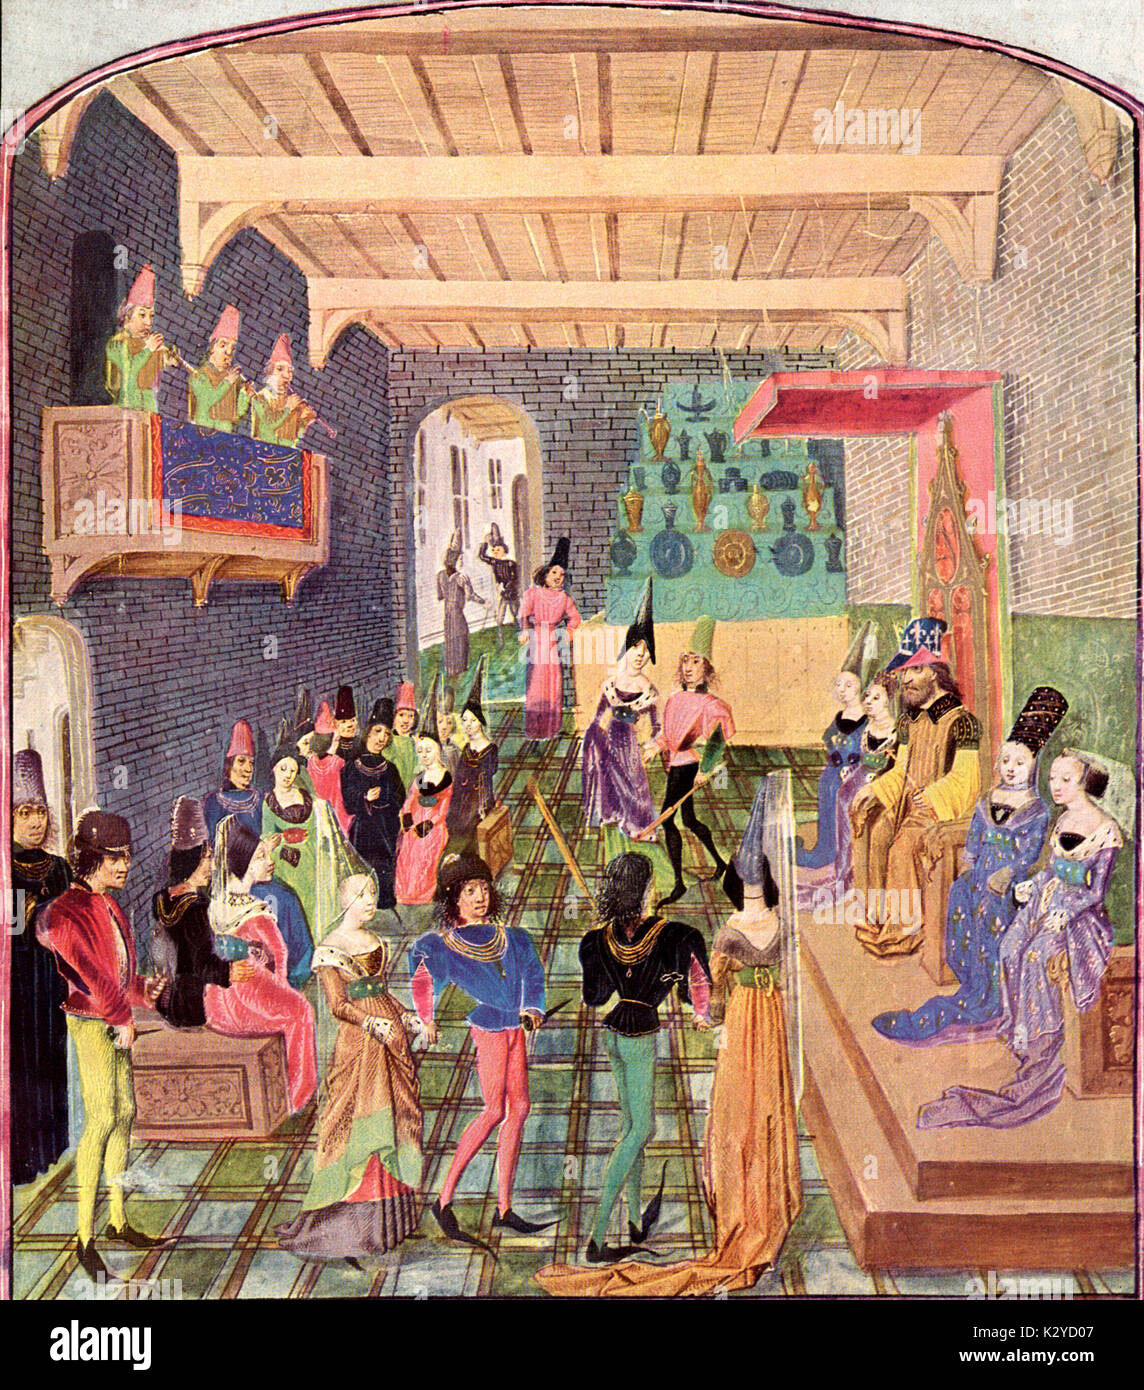 15e siècle Angleterre Basse danse, avec des musiciens jouant cornettos sur balcon. Miniature du 15e siècle à partir de l'anglais chronique de Jean de Waurin. Assis sur la tribune avec noblesse les couples danser. Banquet, fête, Fête. Banque D'Images